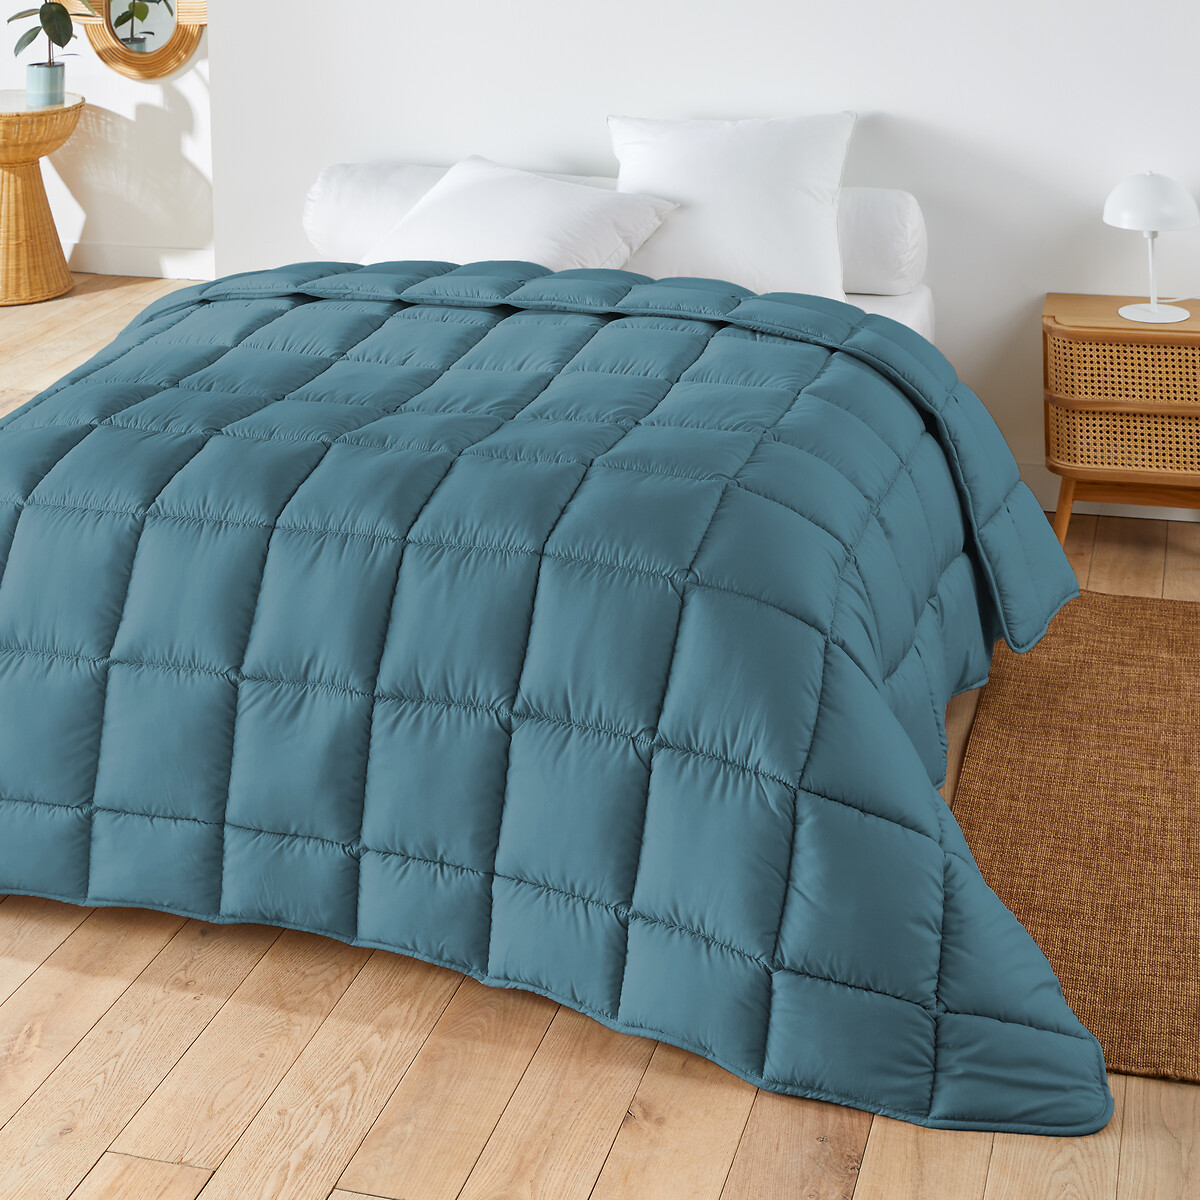 Одеяло яркое из синтетической ткани для прохладного помещения  240 x 220 см синий LaRedoute, размер 240 x 220 см